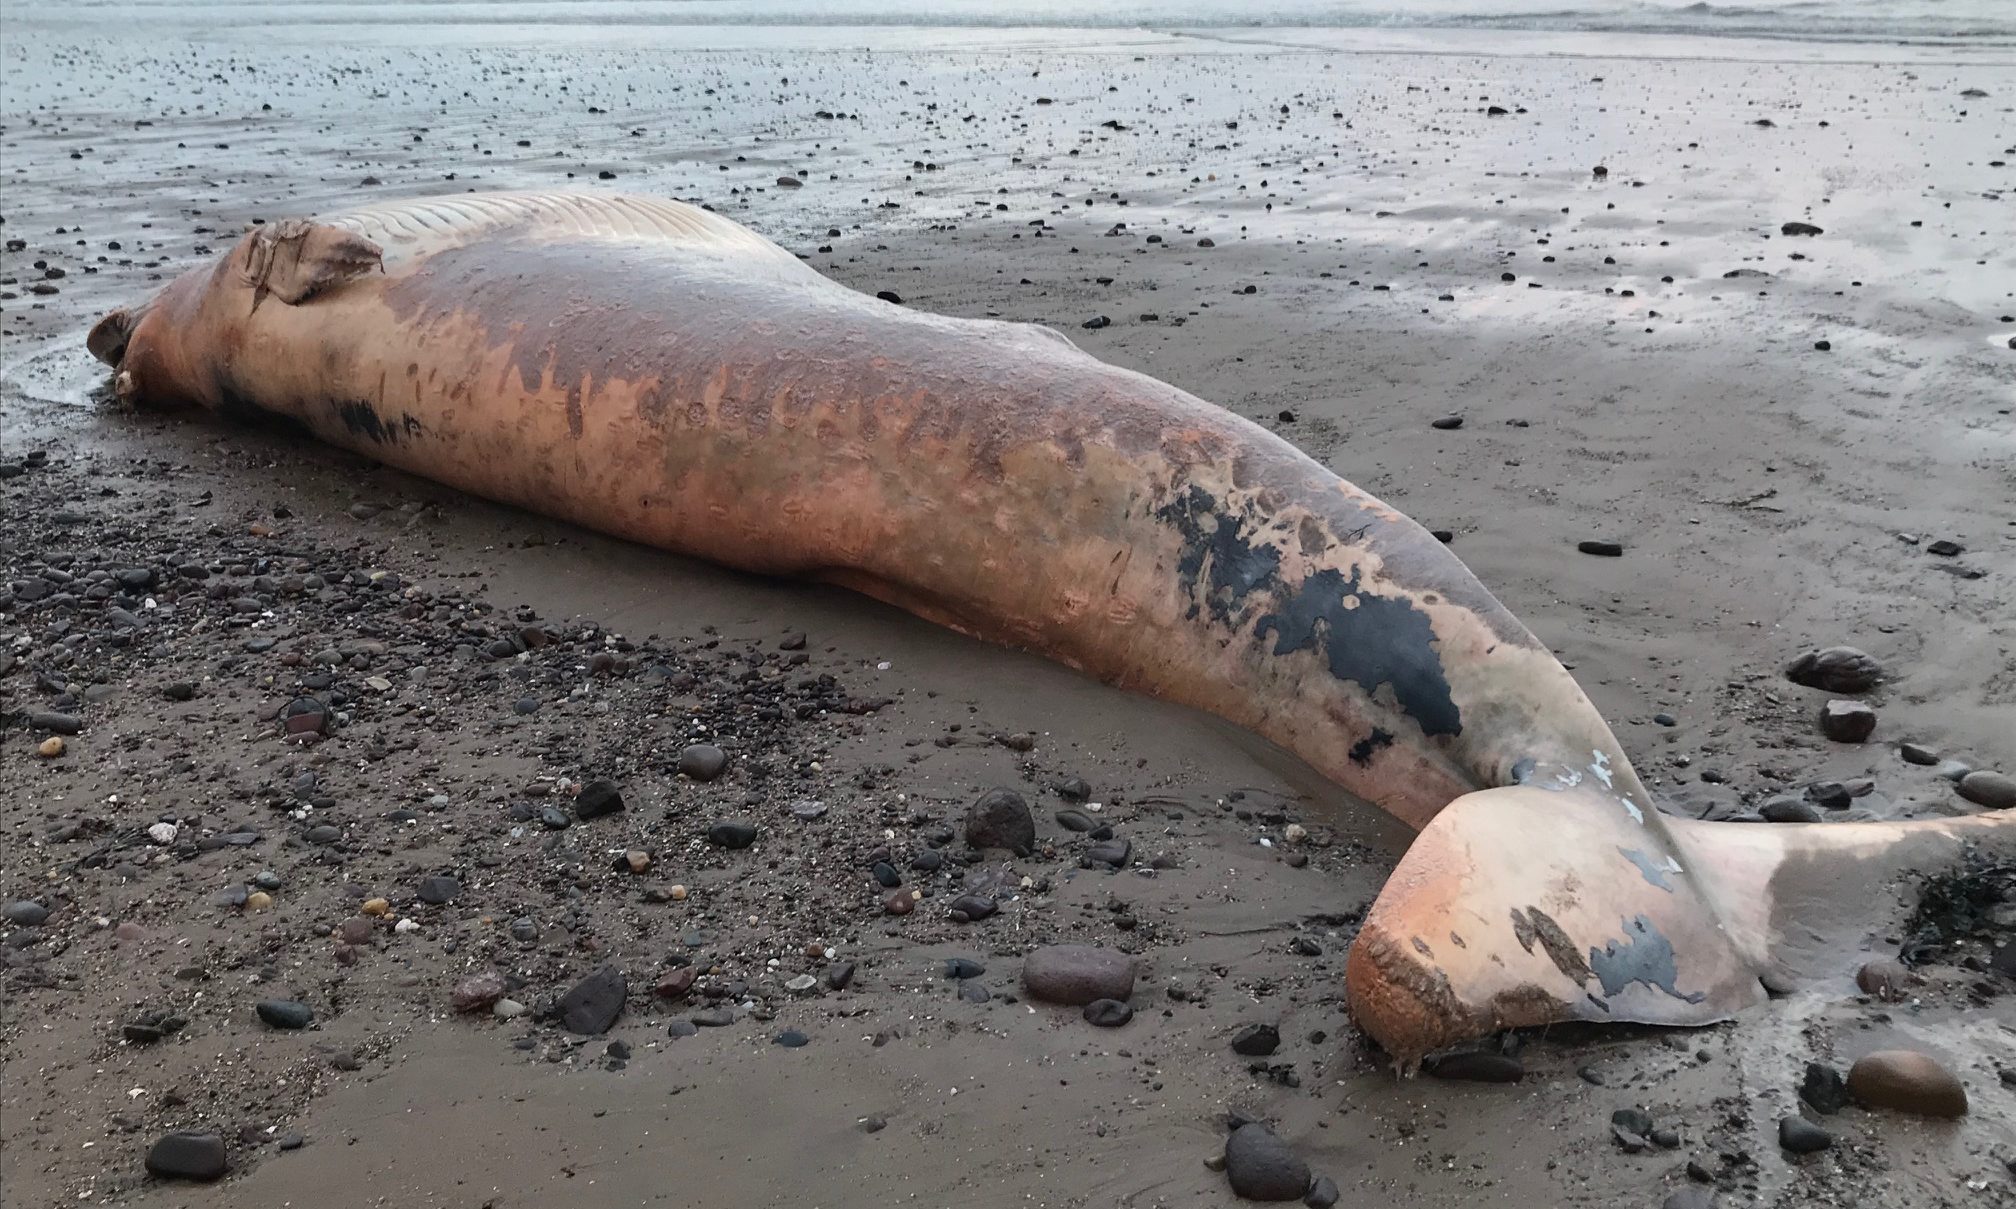 The whale found near Lunan Bay.